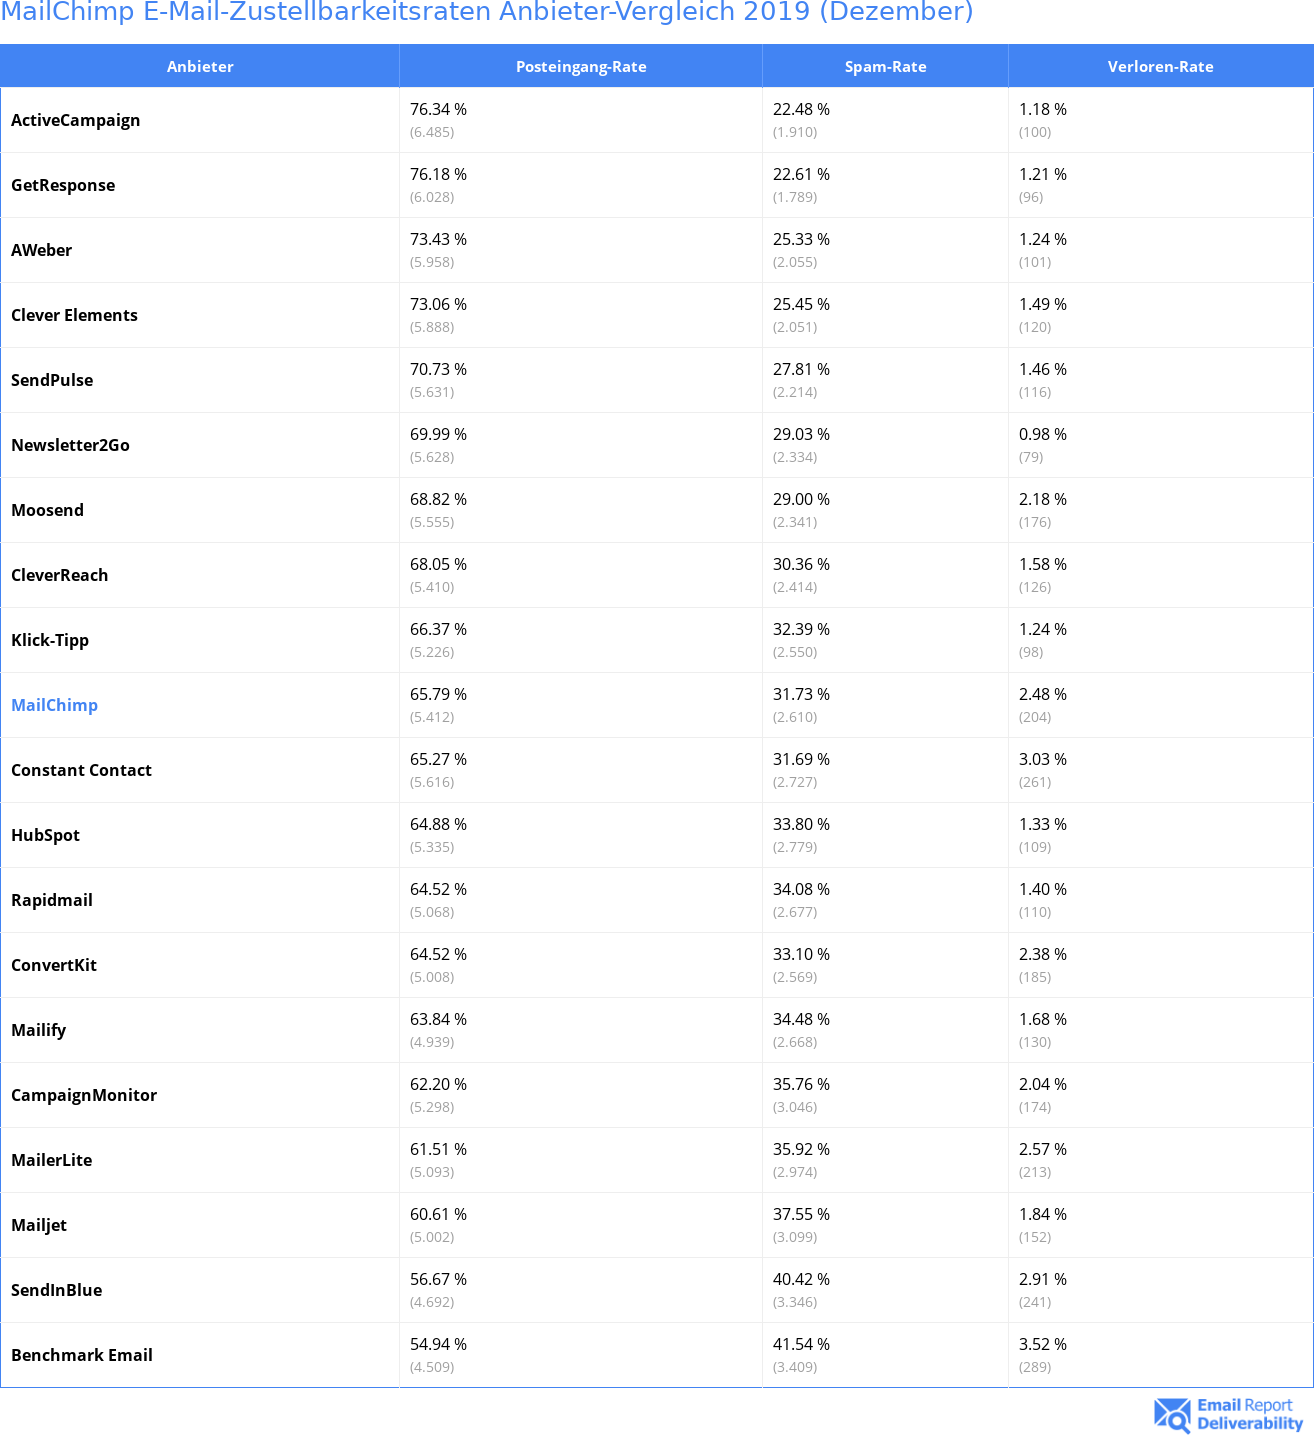 MailChimp E-Mail-Zustellbarkeitsraten Anbieter-Vergleich 2019 (Dezember)